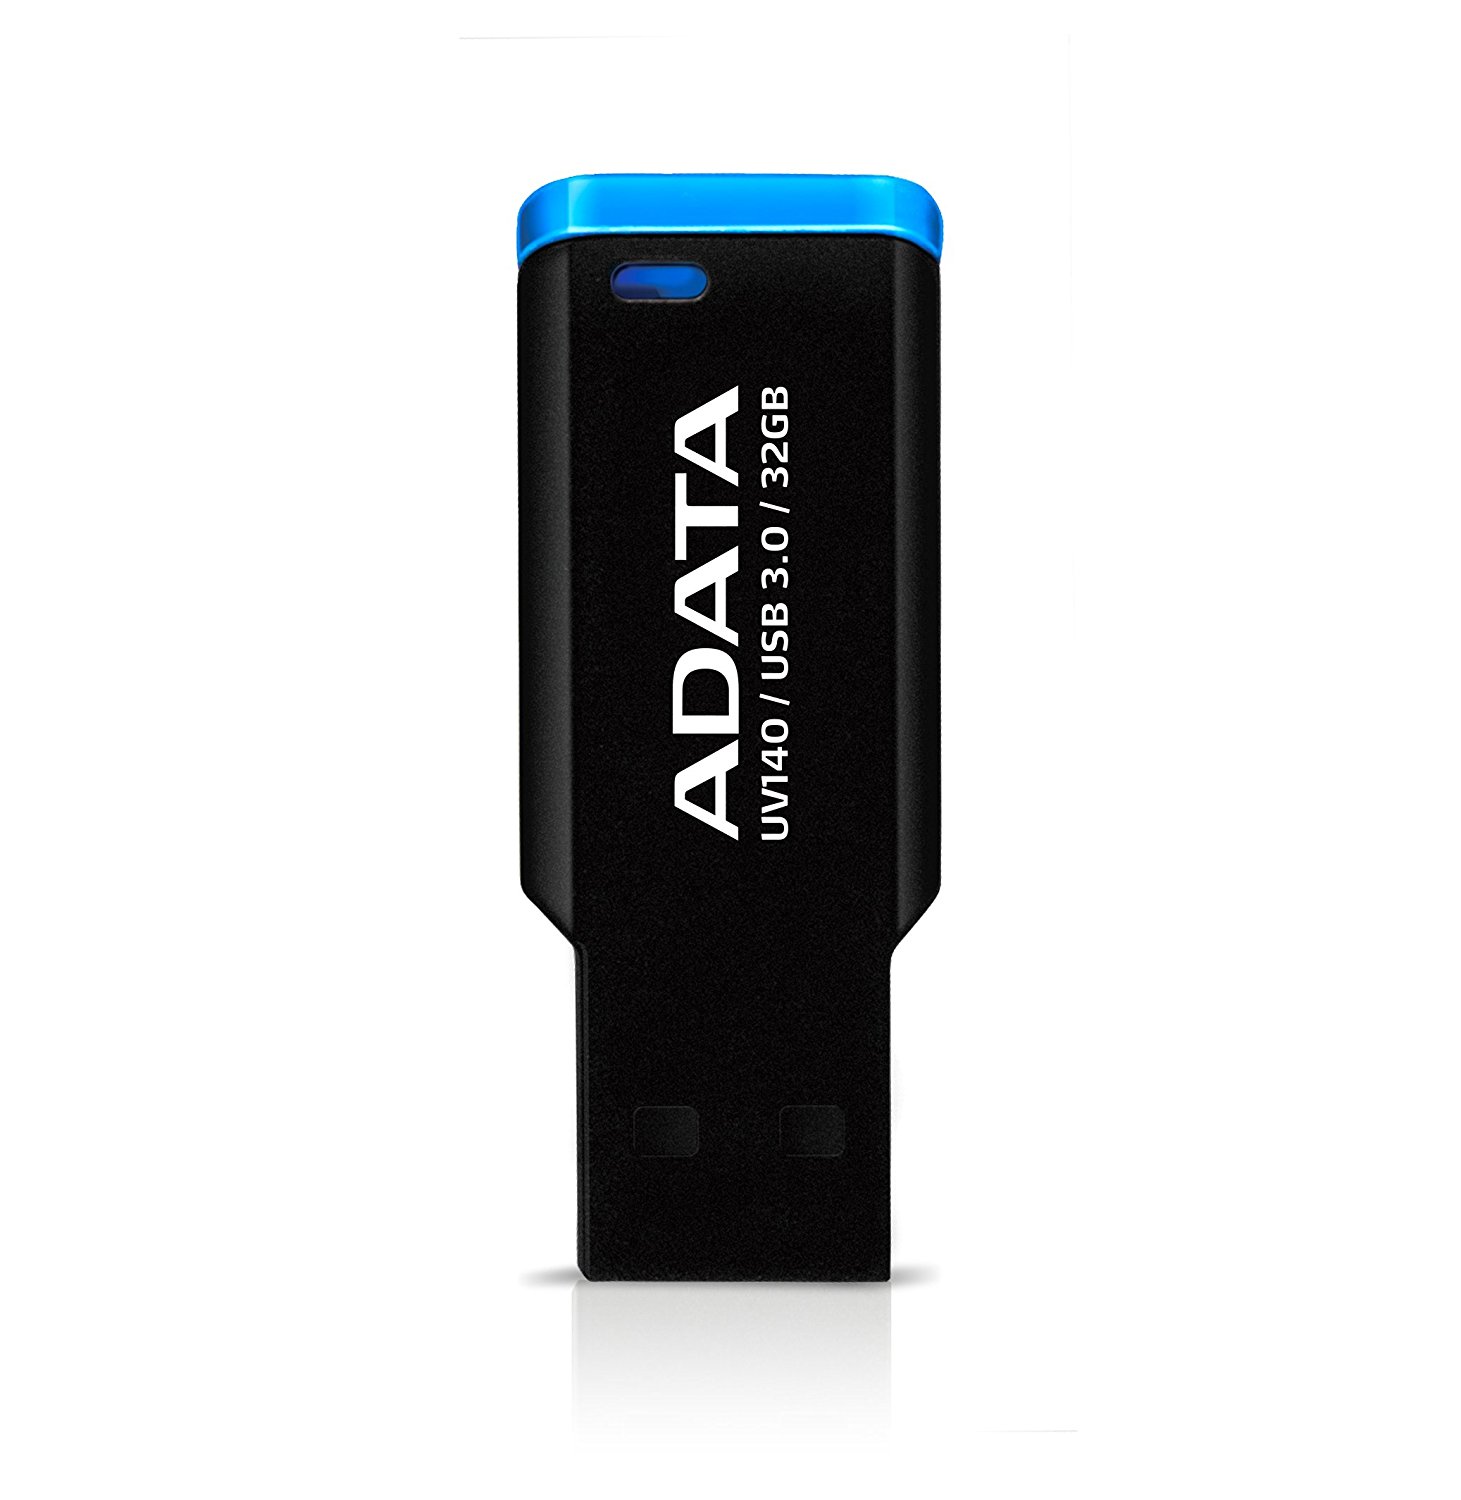 فلاش مموری ADATA UV140 Flash Memory 32GB USB 3.0